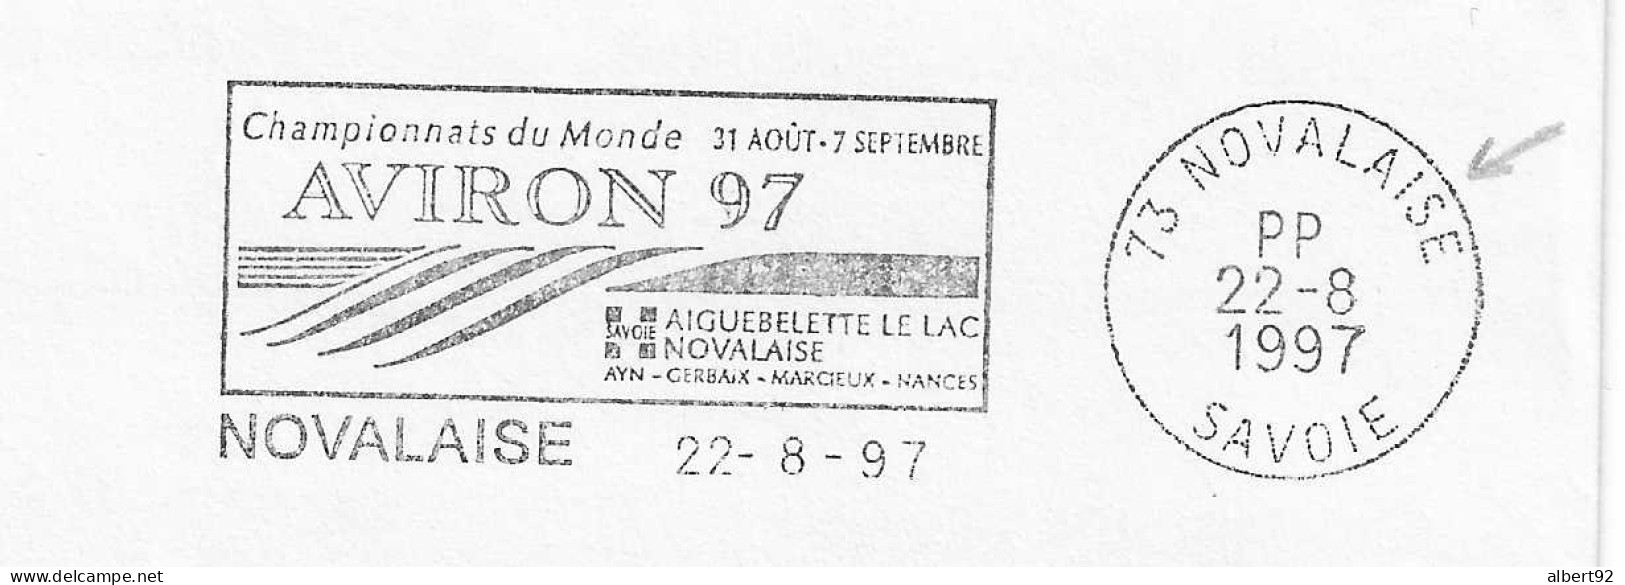 1997 Championnats Du Monde D'Aviron à Aiguebelette: Flamme Postale Port Payé (PP Dans Le Bloc Dateur) - Aviron